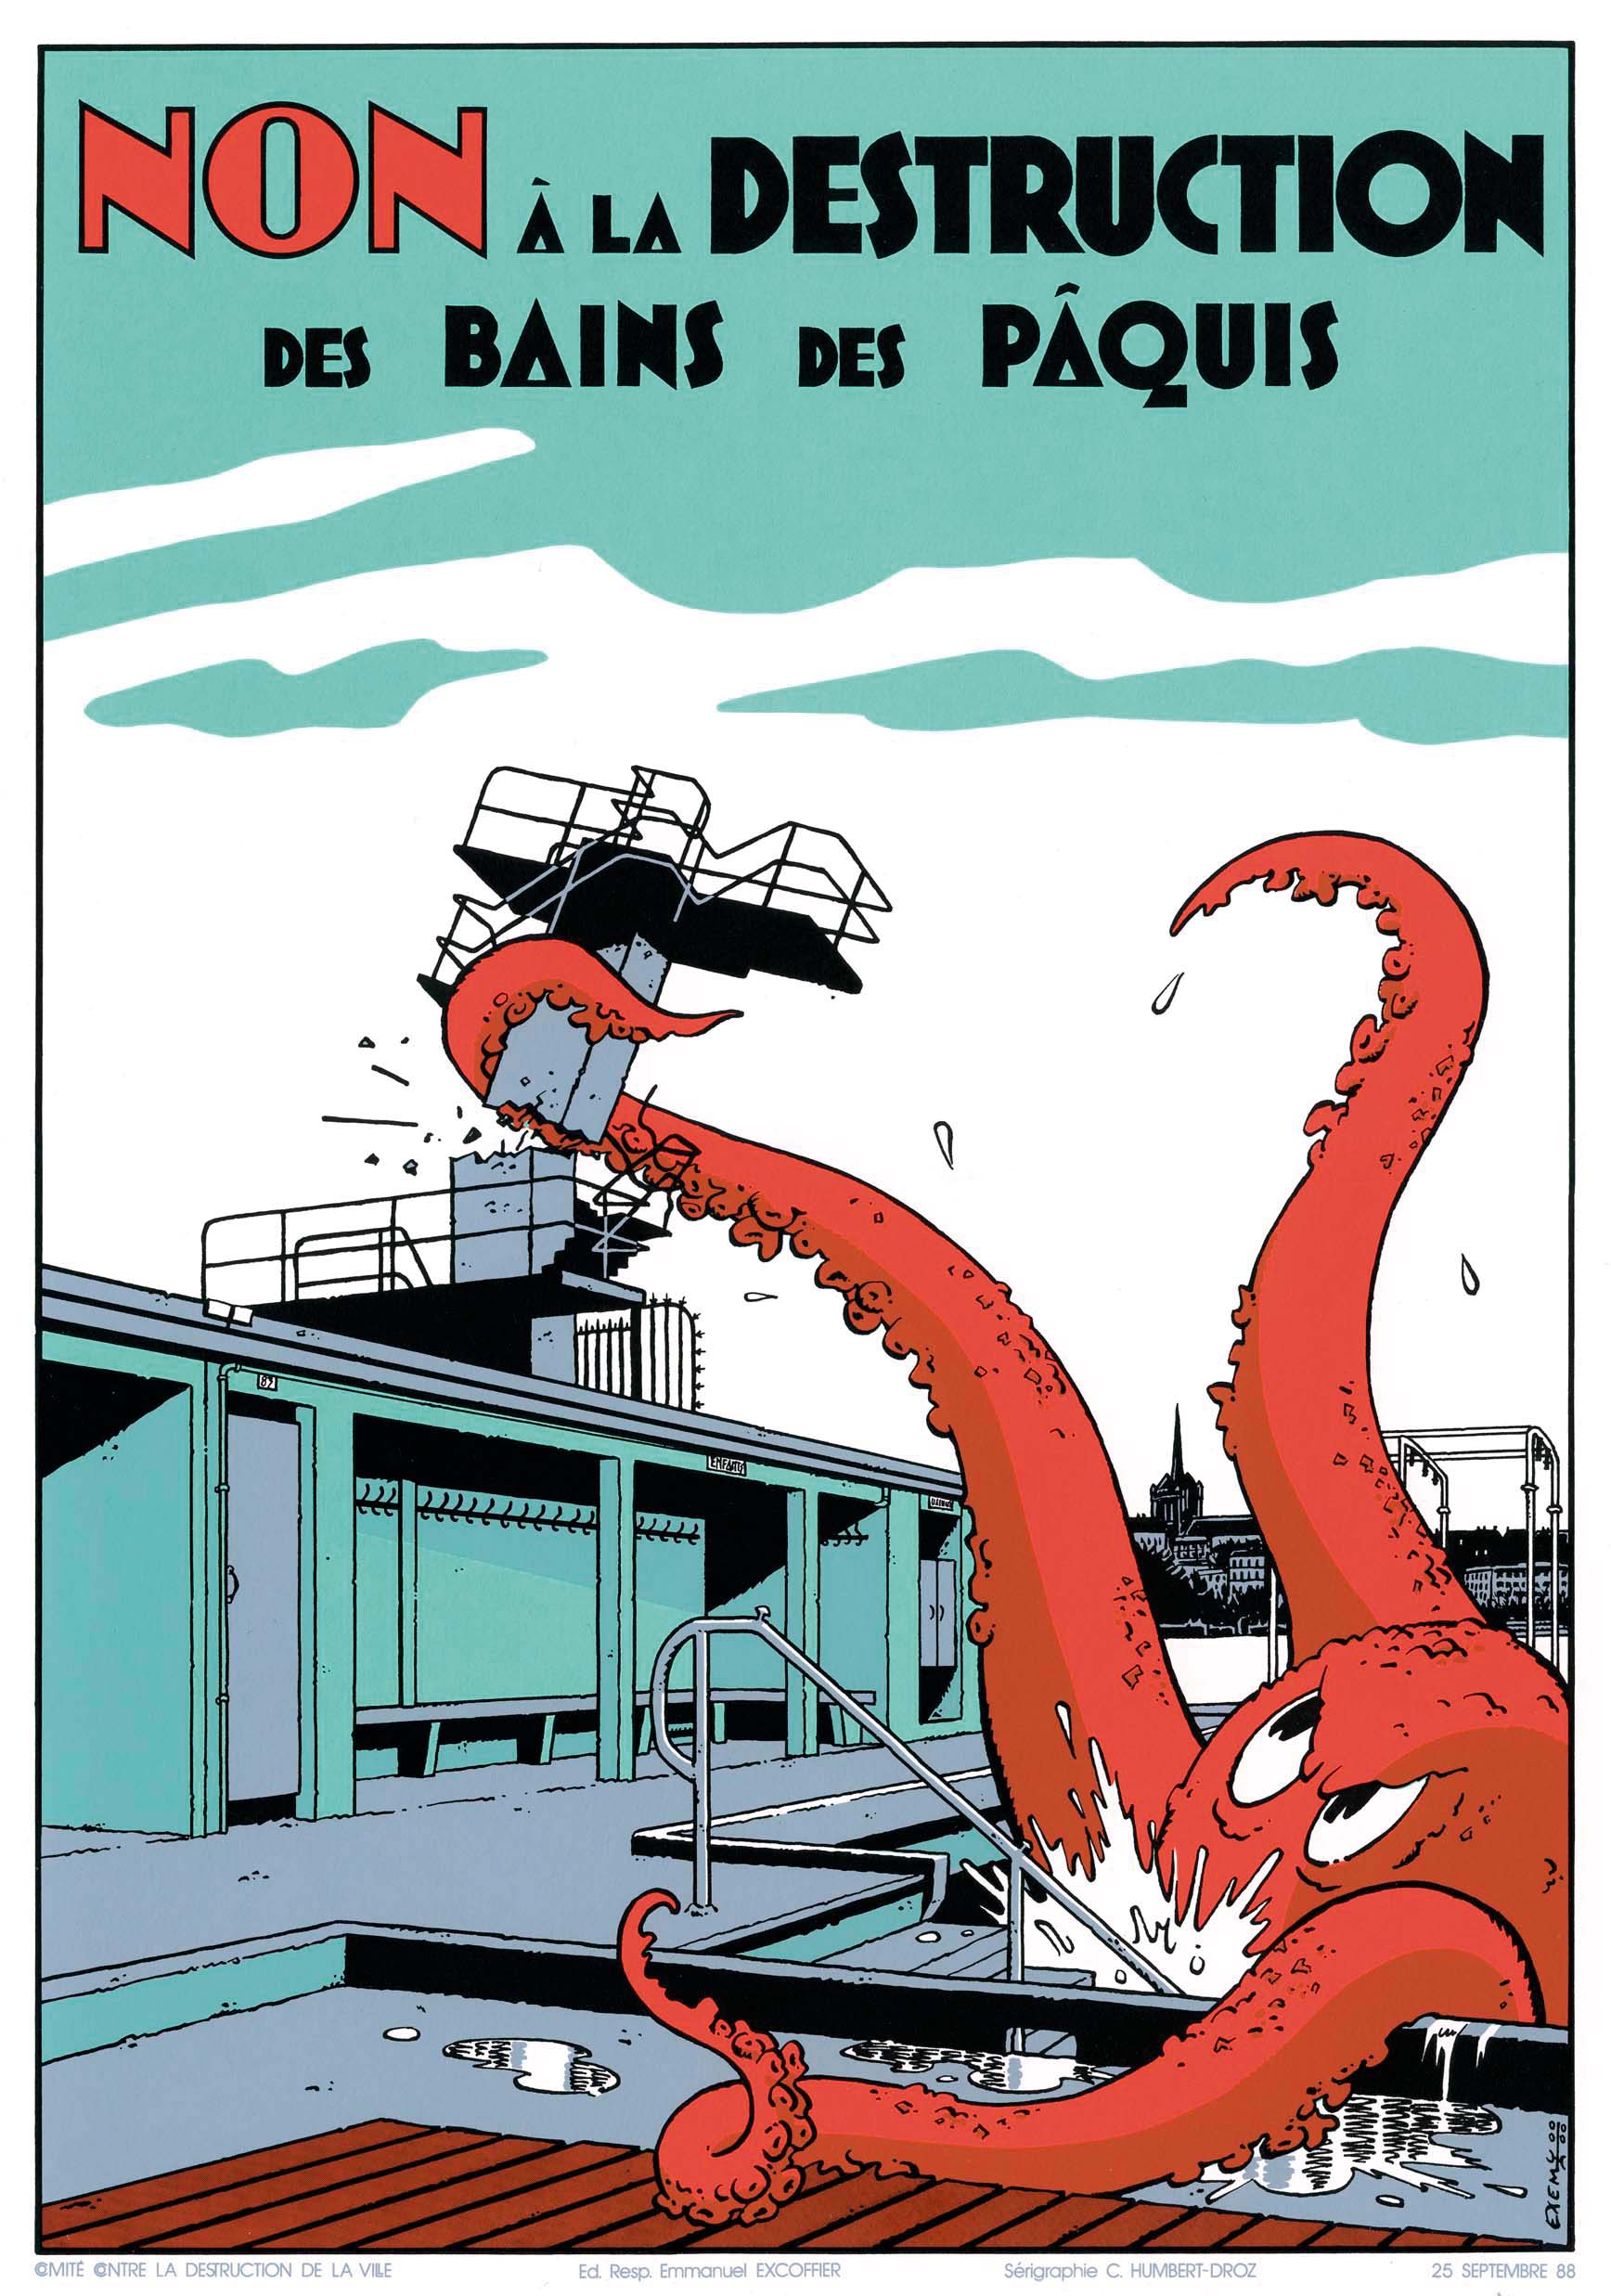 Poster by illustrator Exem against the destruction of the Bains des Pâquis 